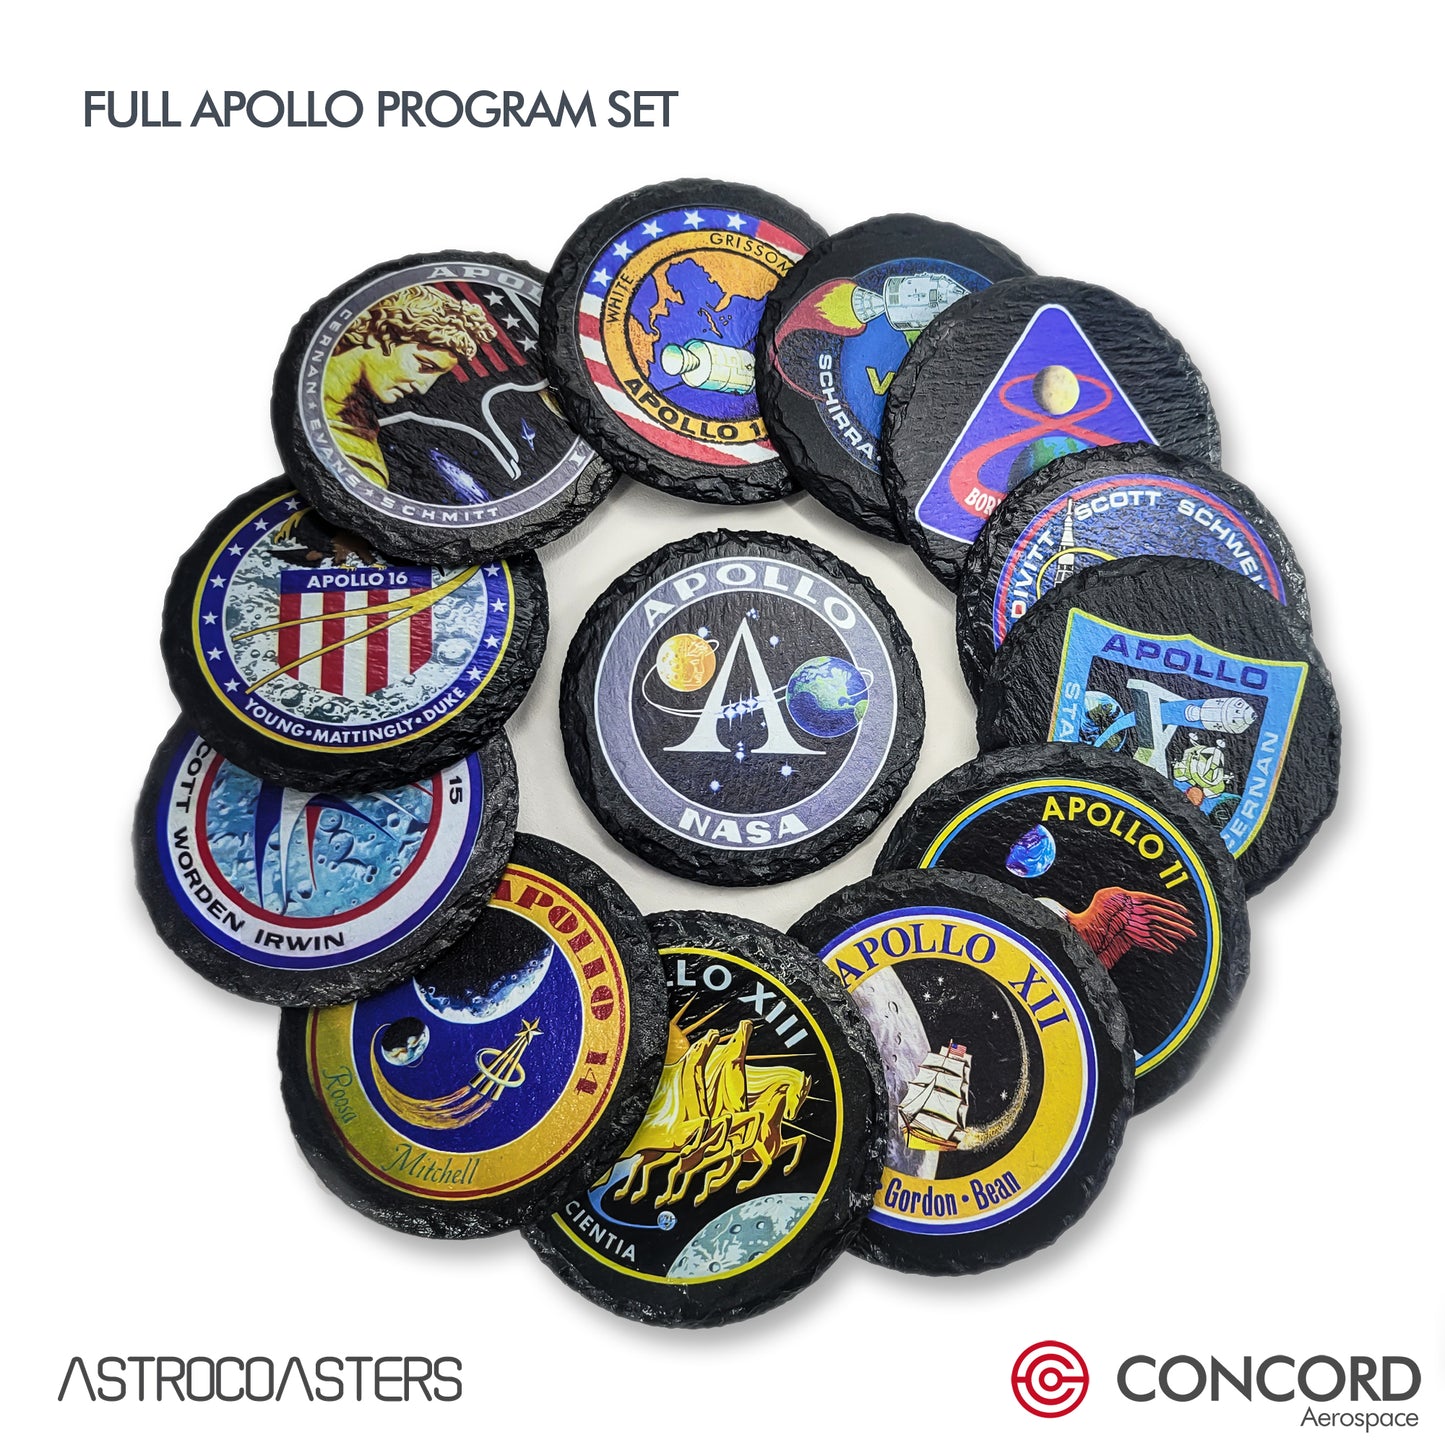 APOLLO 10 MISSION - SLATE COASTER - Concord Aerospace Concord Aerospace Concord Aerospace Coasters